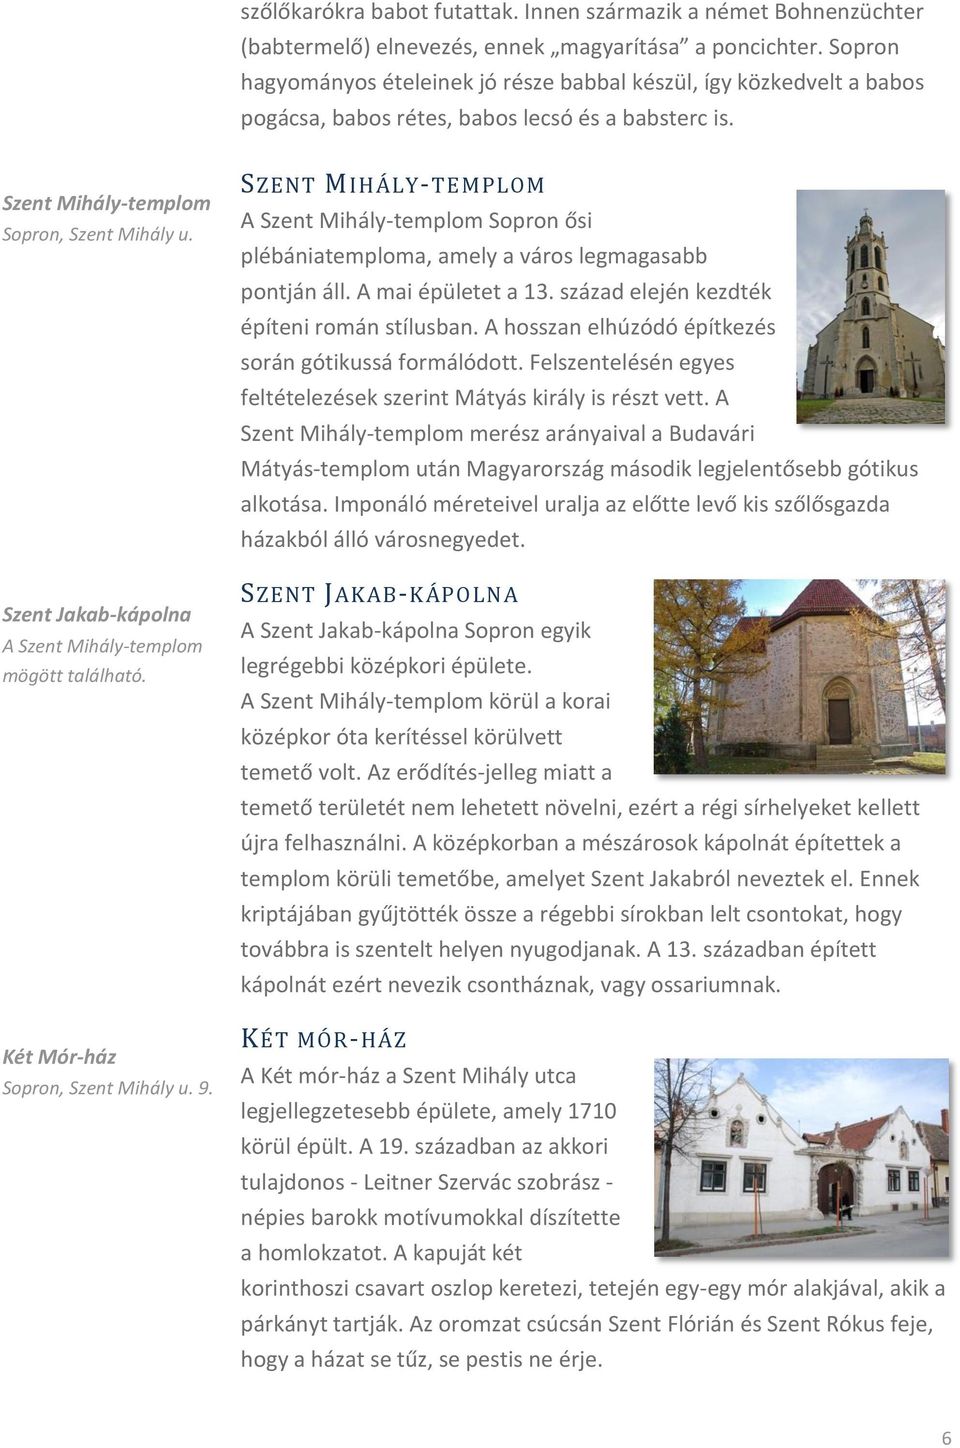 Szent Jakab-kápolna A Szent Mihály-templom mögött található. Két Mór-ház Sopron, Szent Mihály u. 9.